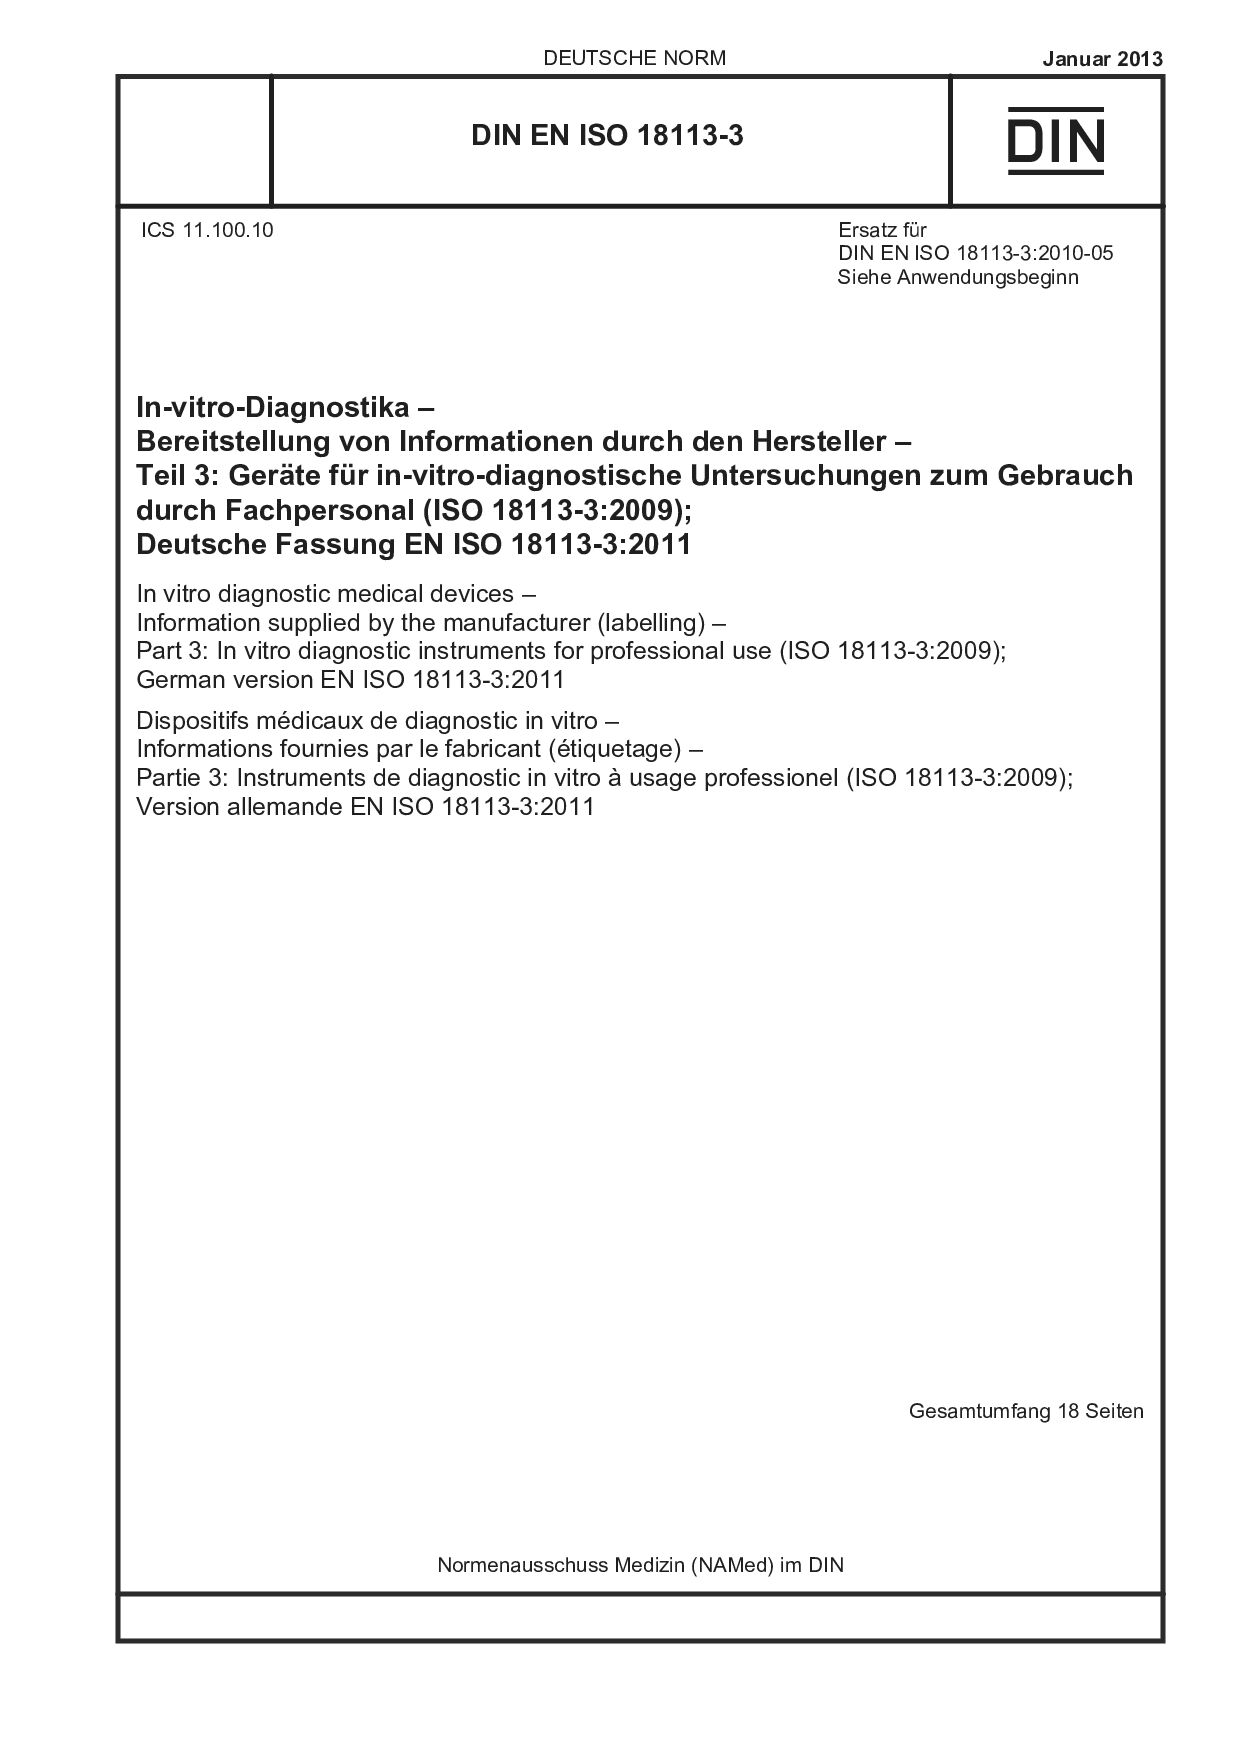 DIN EN ISO 18113-3:2013